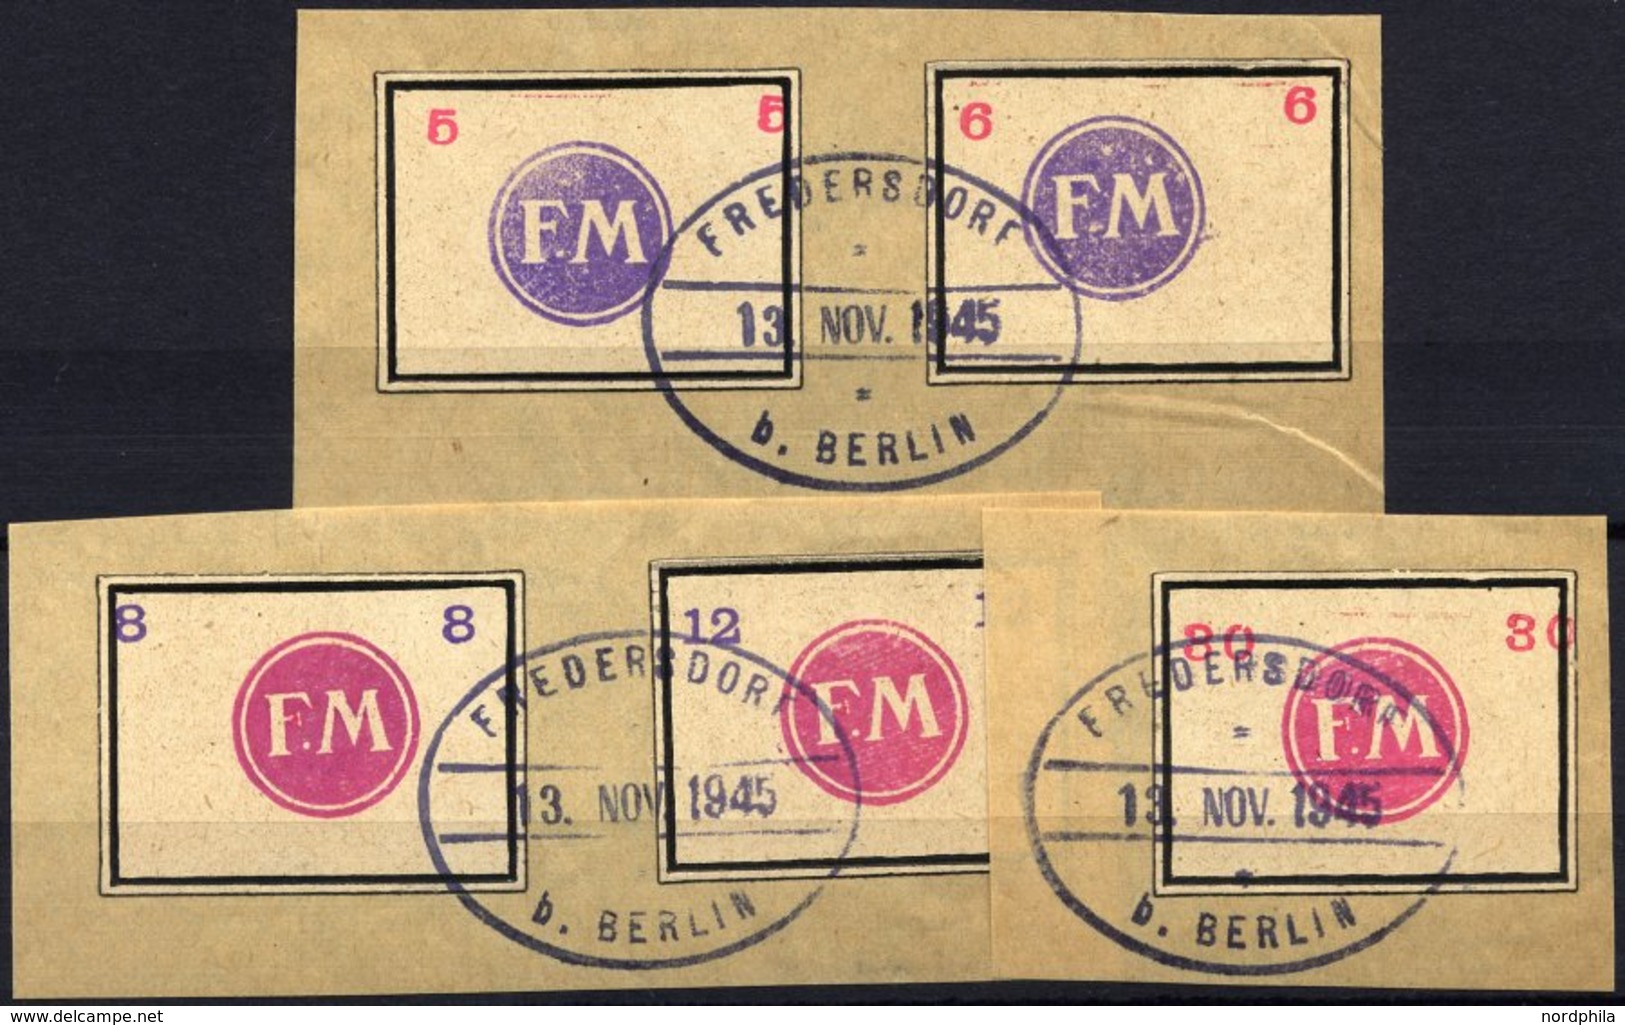 FREDERSDORF Sp 246-50 BrfStk, 1945, 5 - 30 Pf., Rahmengröße 38x28 Mm, Kleine Wertziffern, Prachtsatz Auf Briefstücken, A - Private & Local Mails